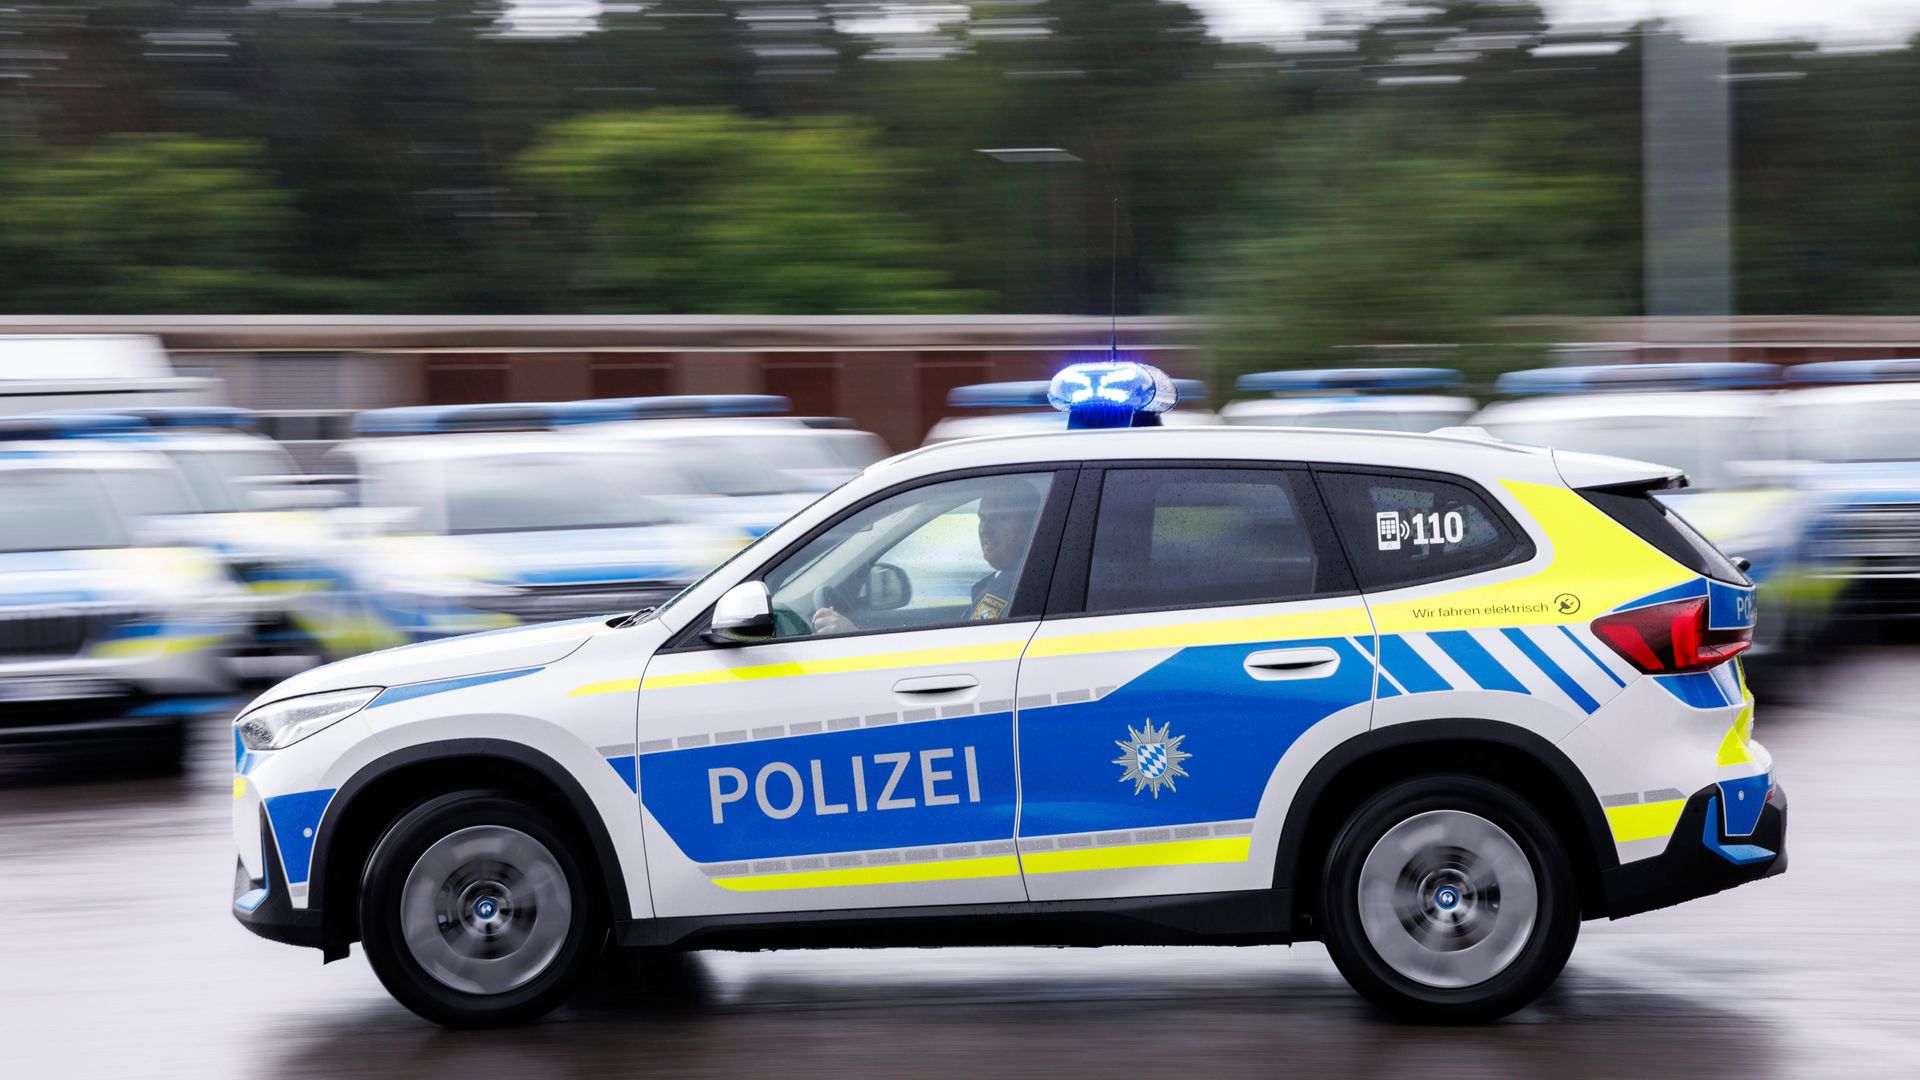 nürnberg: mutmaßlich gewalttätige linksextreme nach angriff auf augenscheinlich rechte in budapest festgenommen